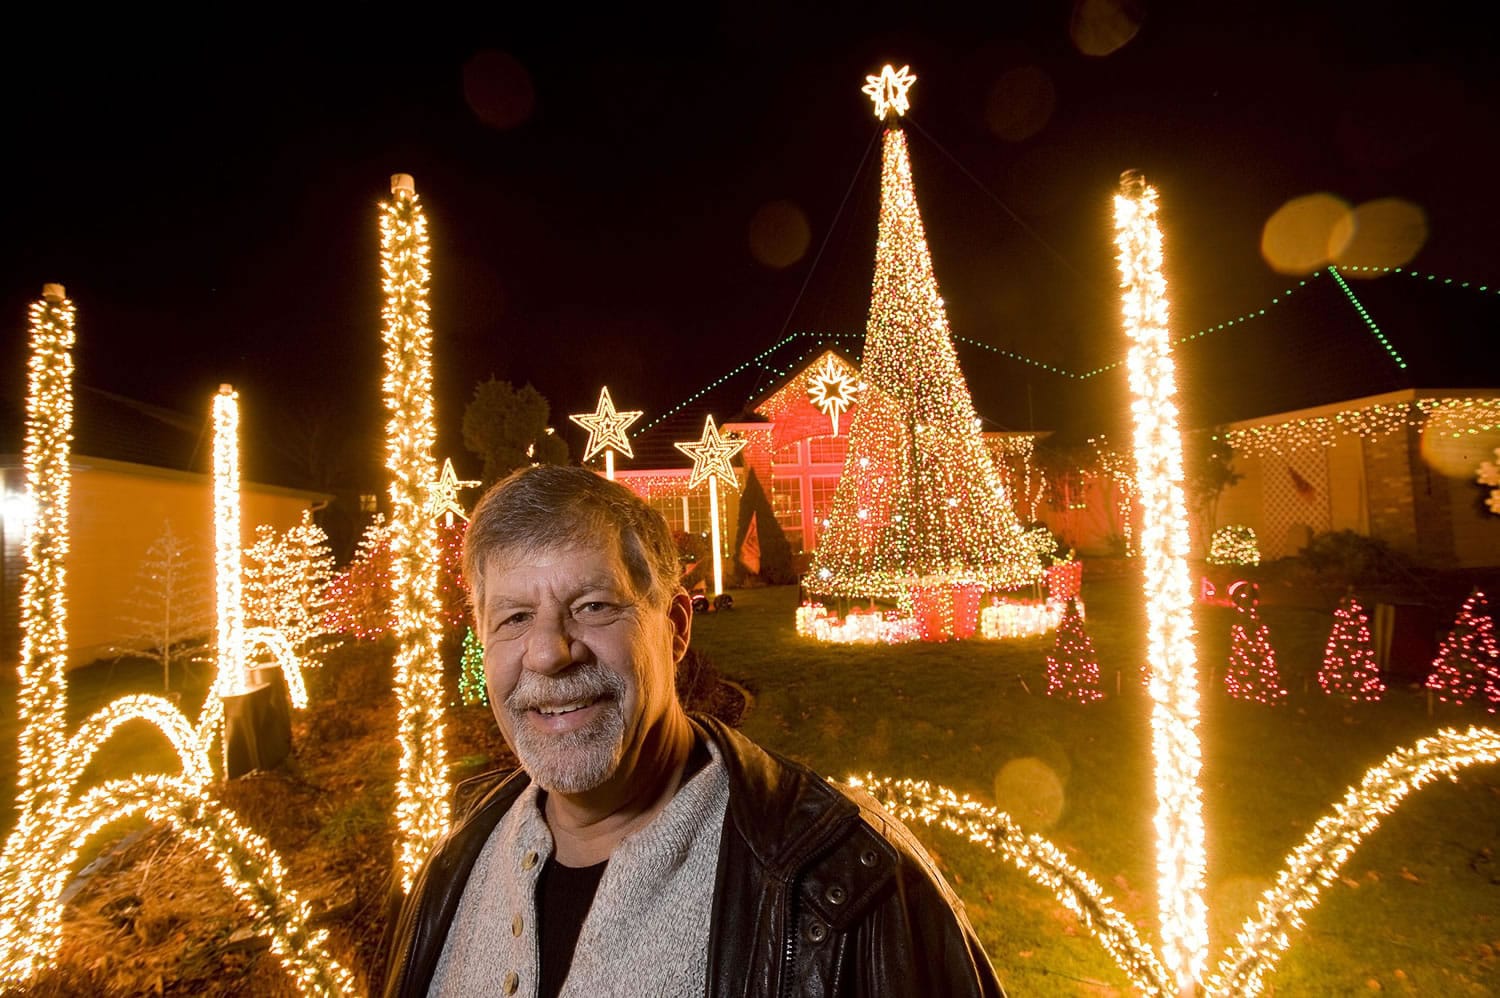 John Pfeiffer's Christmas light display at his Camas home has 55,000 lights sequenced to 17 Christmas songs.